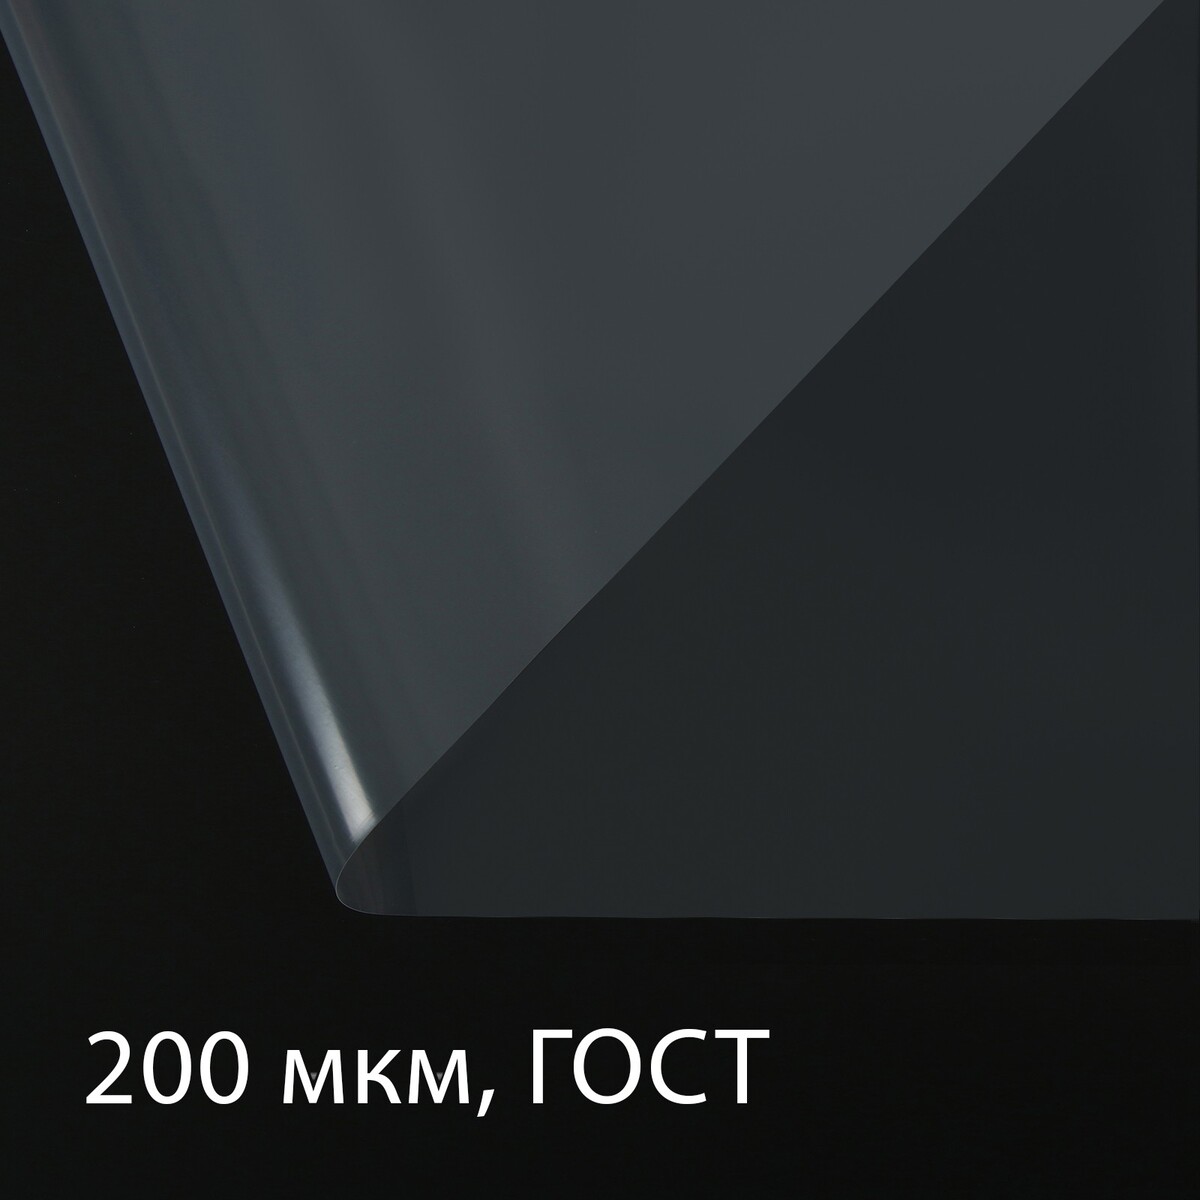 Пленка полиэтиленовая, толщина 200 мкм, прозрачная, 5 × 3 м, рукав (1.5 × 2 м), гост 10354-82, greengo